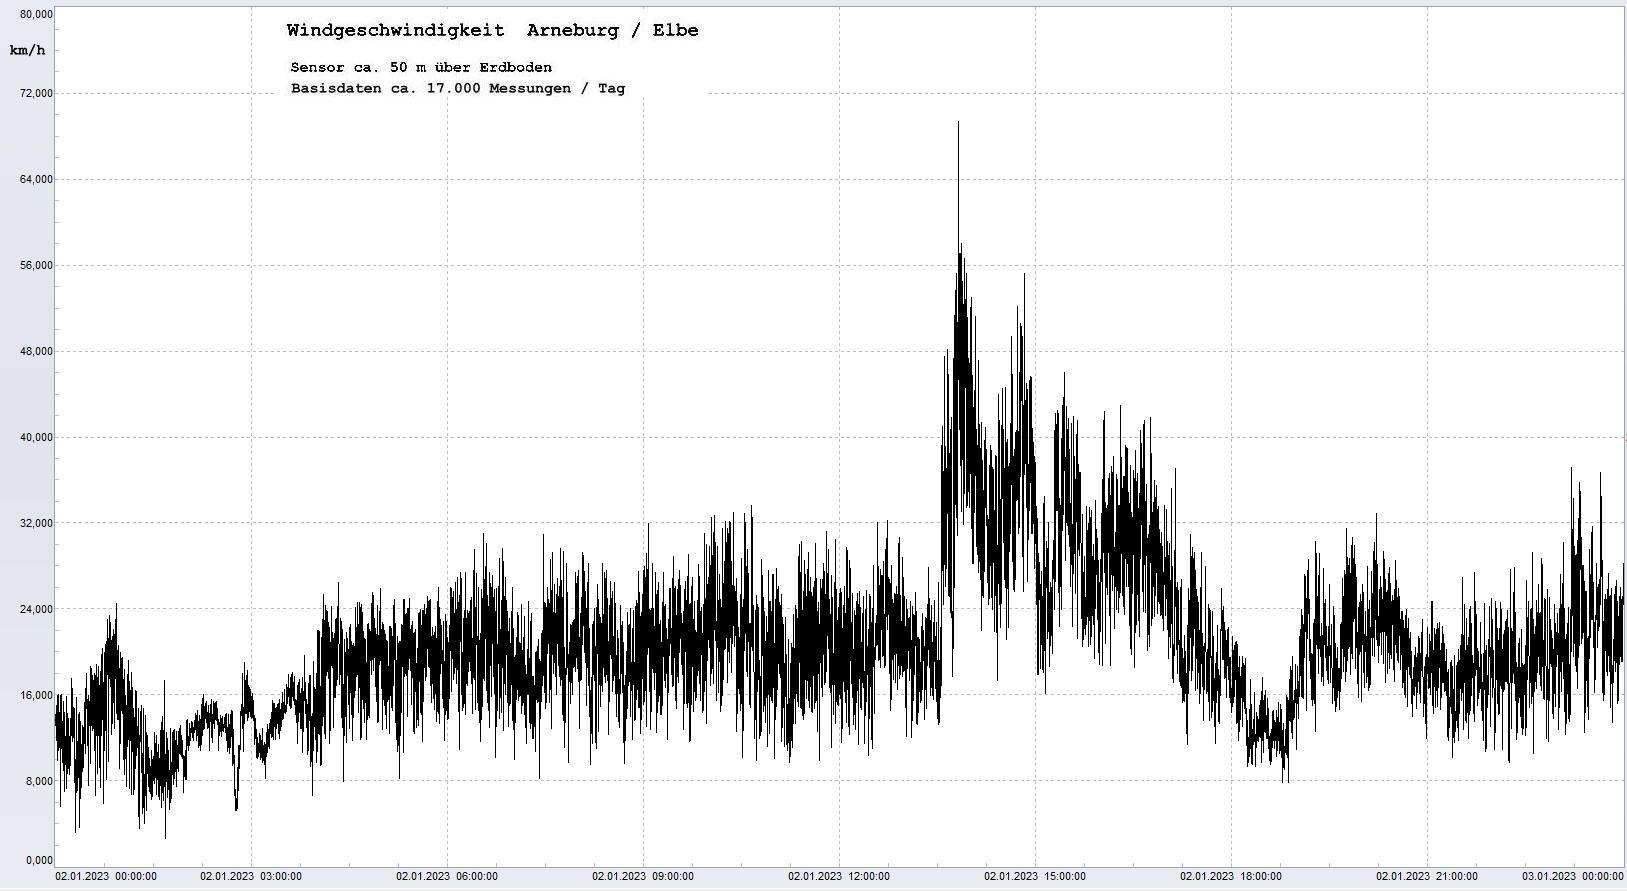 Arneburg Tages-Diagramm Winddaten, 02.01.2023
  Diagramm, Sensor auf Gebude, ca. 50 m ber Erdboden, Basis: 5s-Aufzeichnung